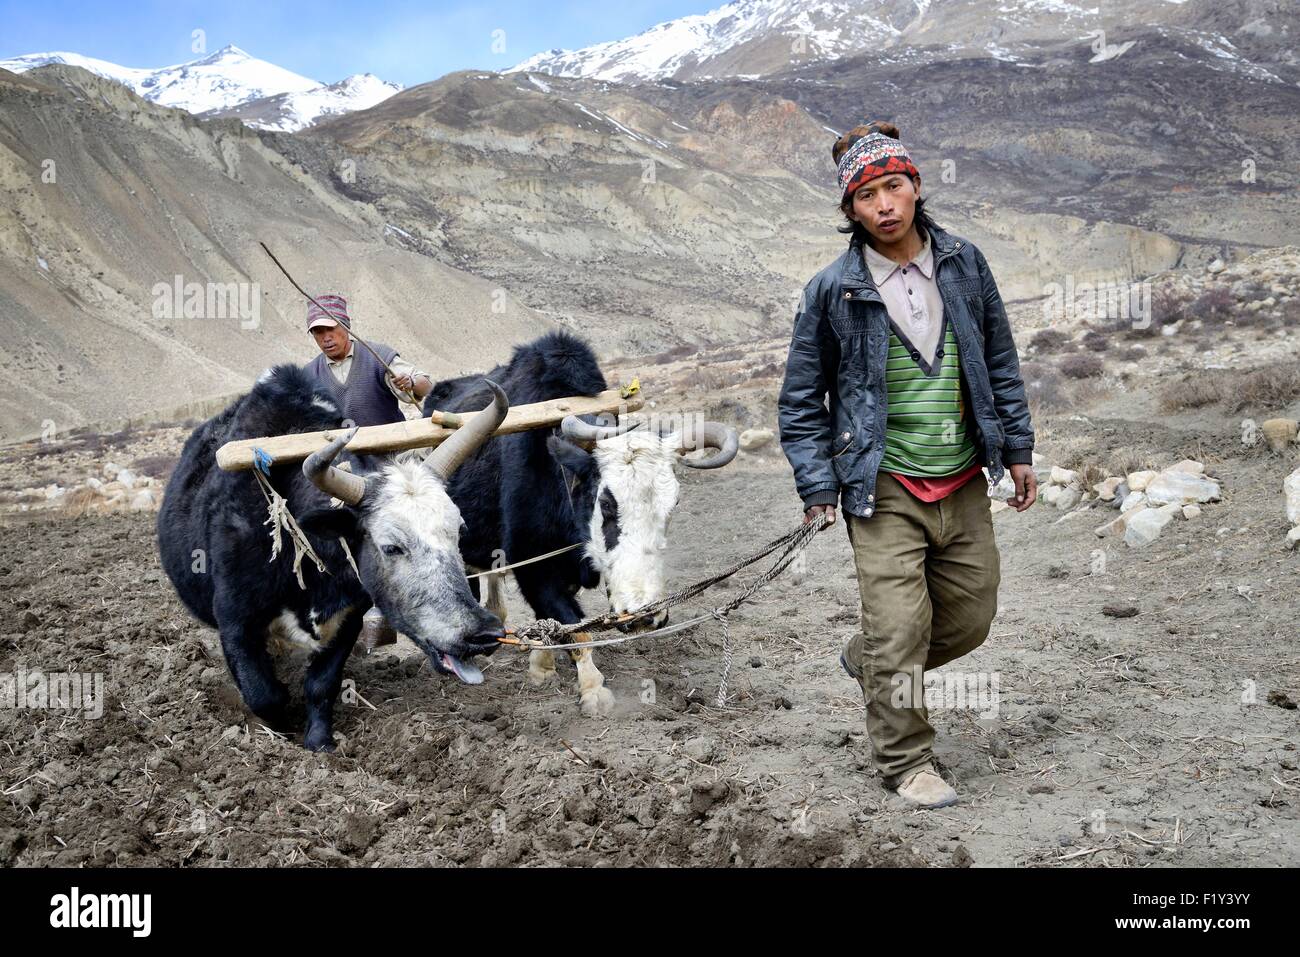 Le Népal, Gandaki zone, Upper Mustang (près de la frontière avec le Tibet), les paysans de labourer un champ avec des yaks Banque D'Images